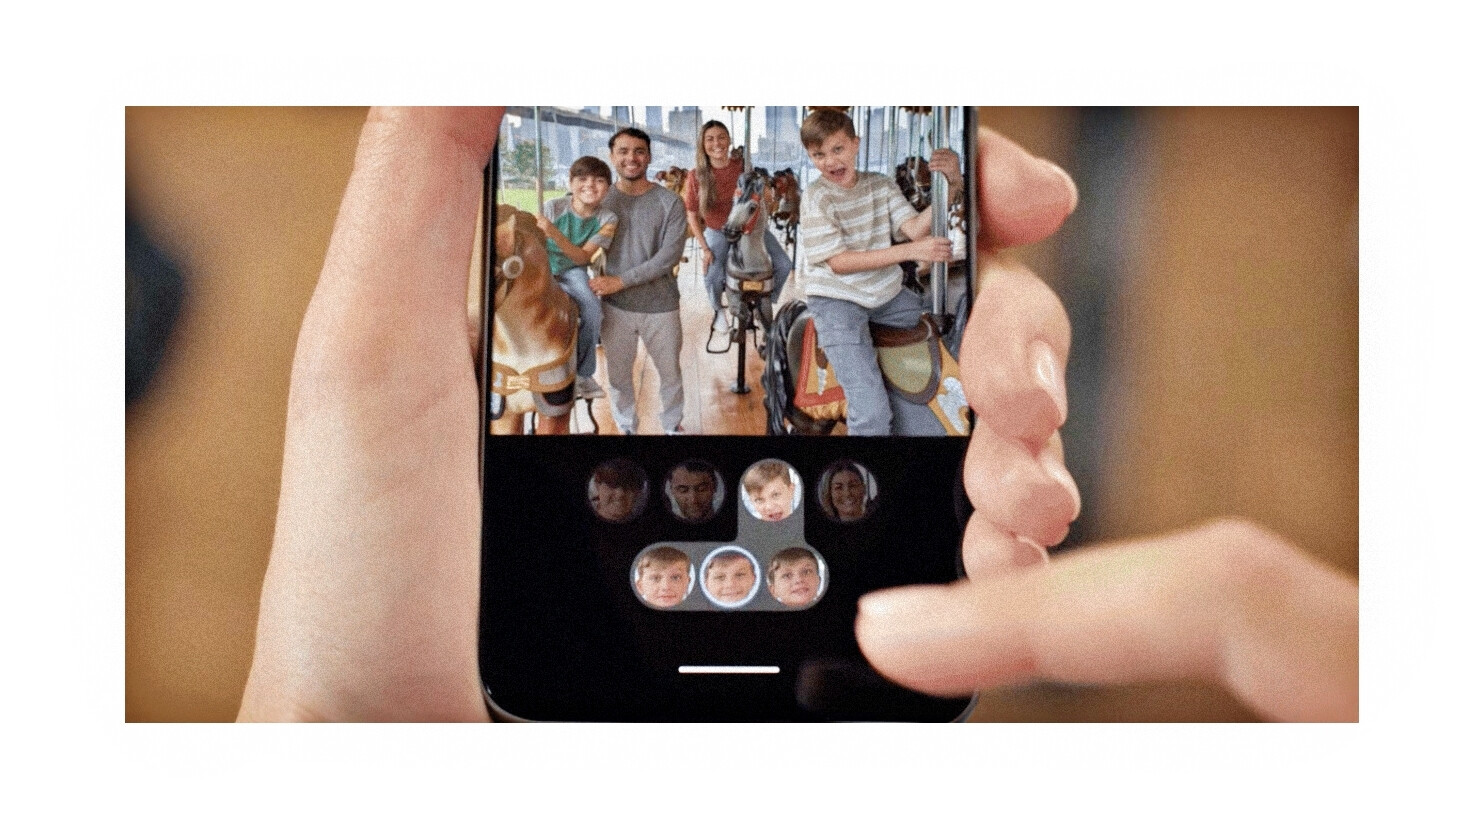 Eğer (fotoğraflarda) yüzünüzden her zaman nefret ettiyseniz, artık onu yüzünüzün farklı bir versiyonuyla değiştirebilirsiniz.  Teşekkürler Google!  - Pixel 8 Pro: AI Android, Samsung ve Apple'a heyecan verici telefonlar yapma konusunda bir ders veriyor